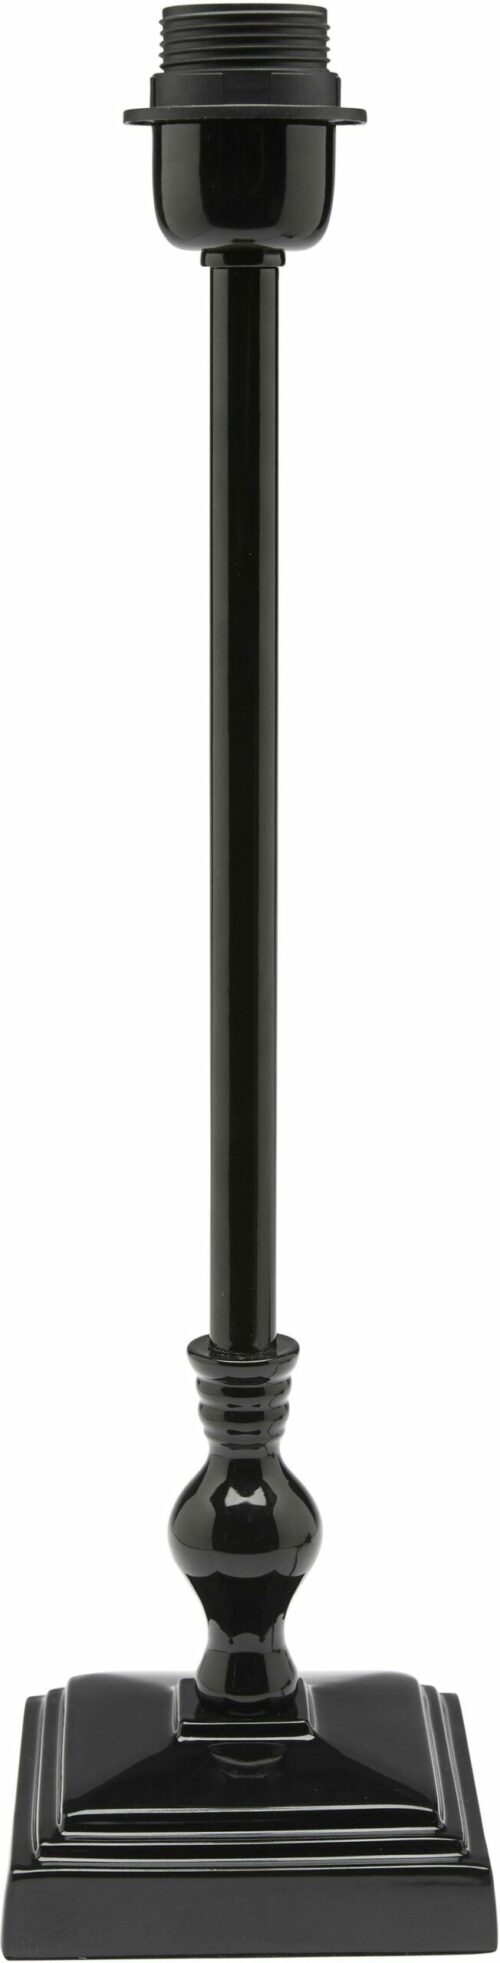 Lampenfuss Lisa glaenzendes schwarz 45 cm scaled